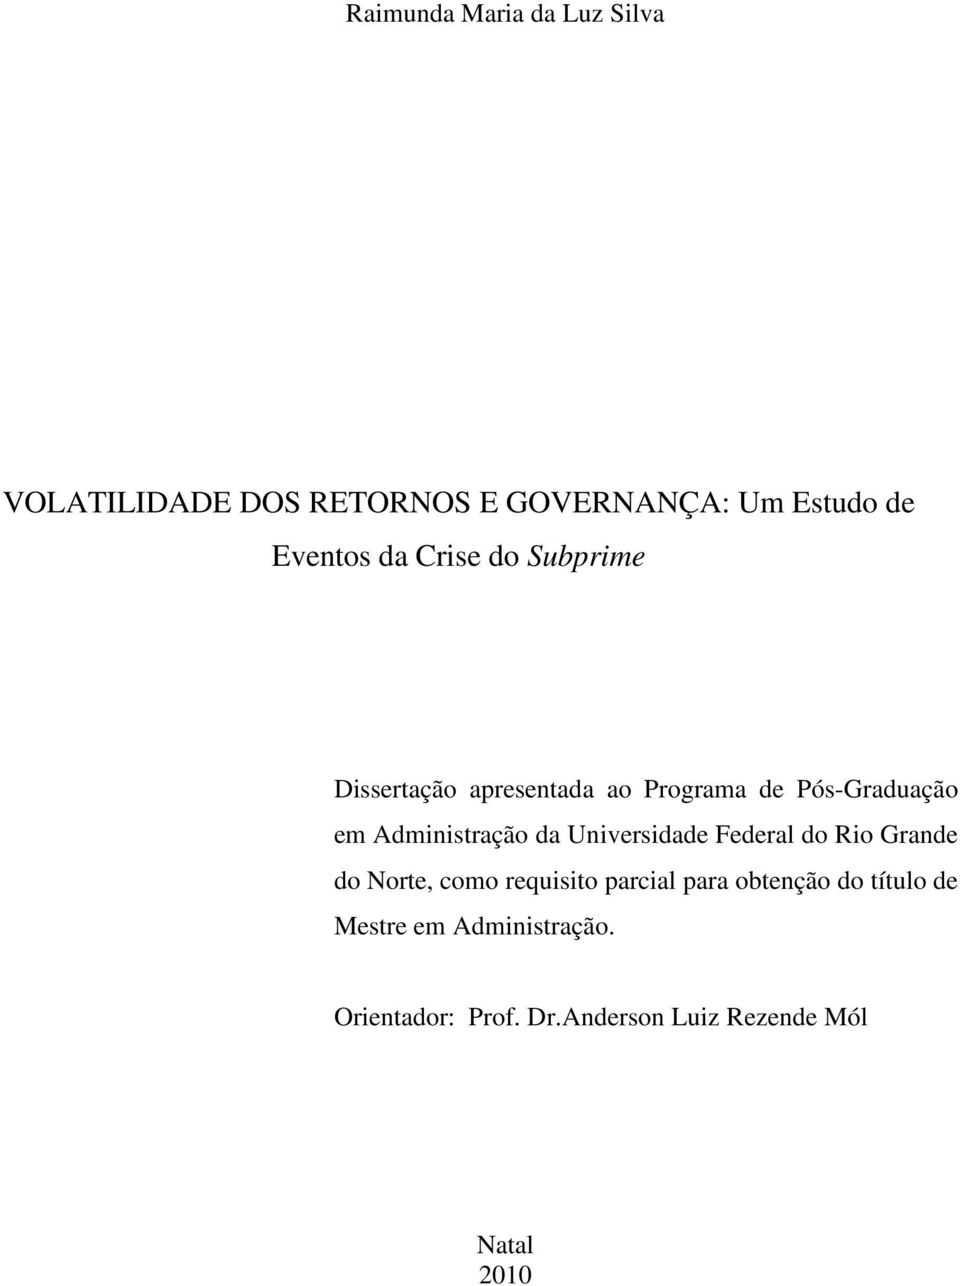 Adminisração da Universidade Federal do Rio Grande do Nore, como requisio parcial para